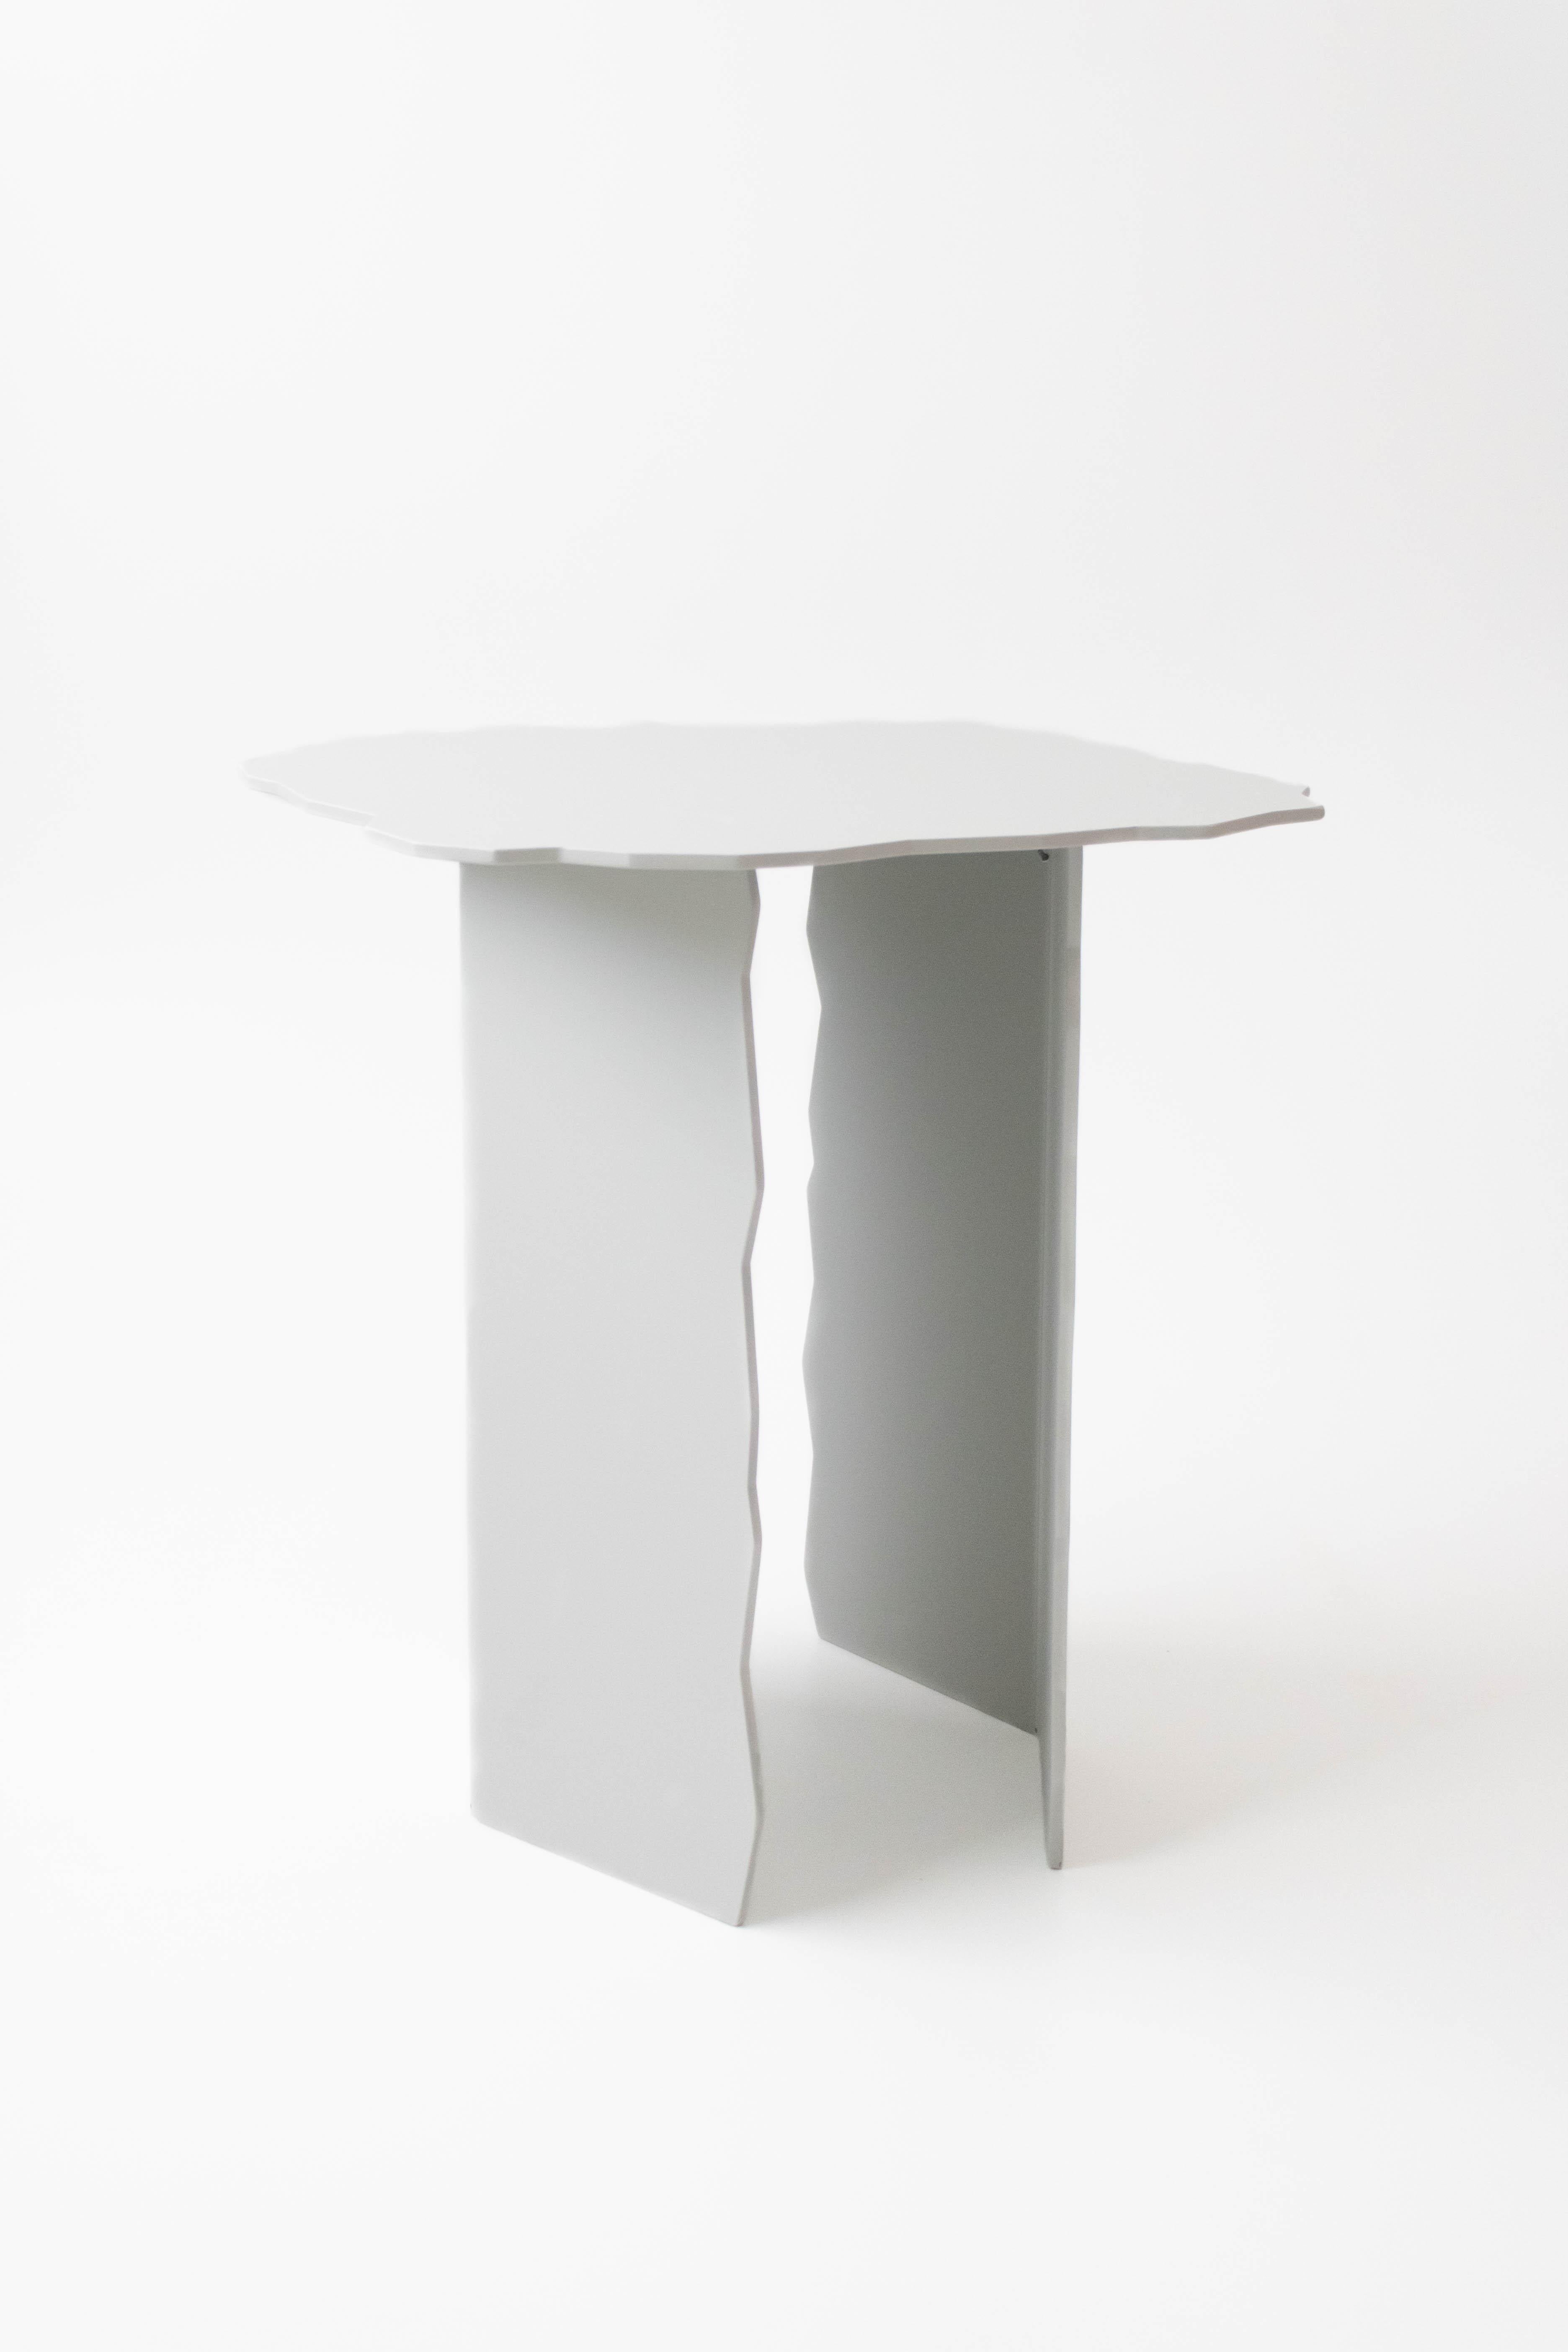 Belgian Set of 2 Disrupt Tables by Arne Desmet For Sale